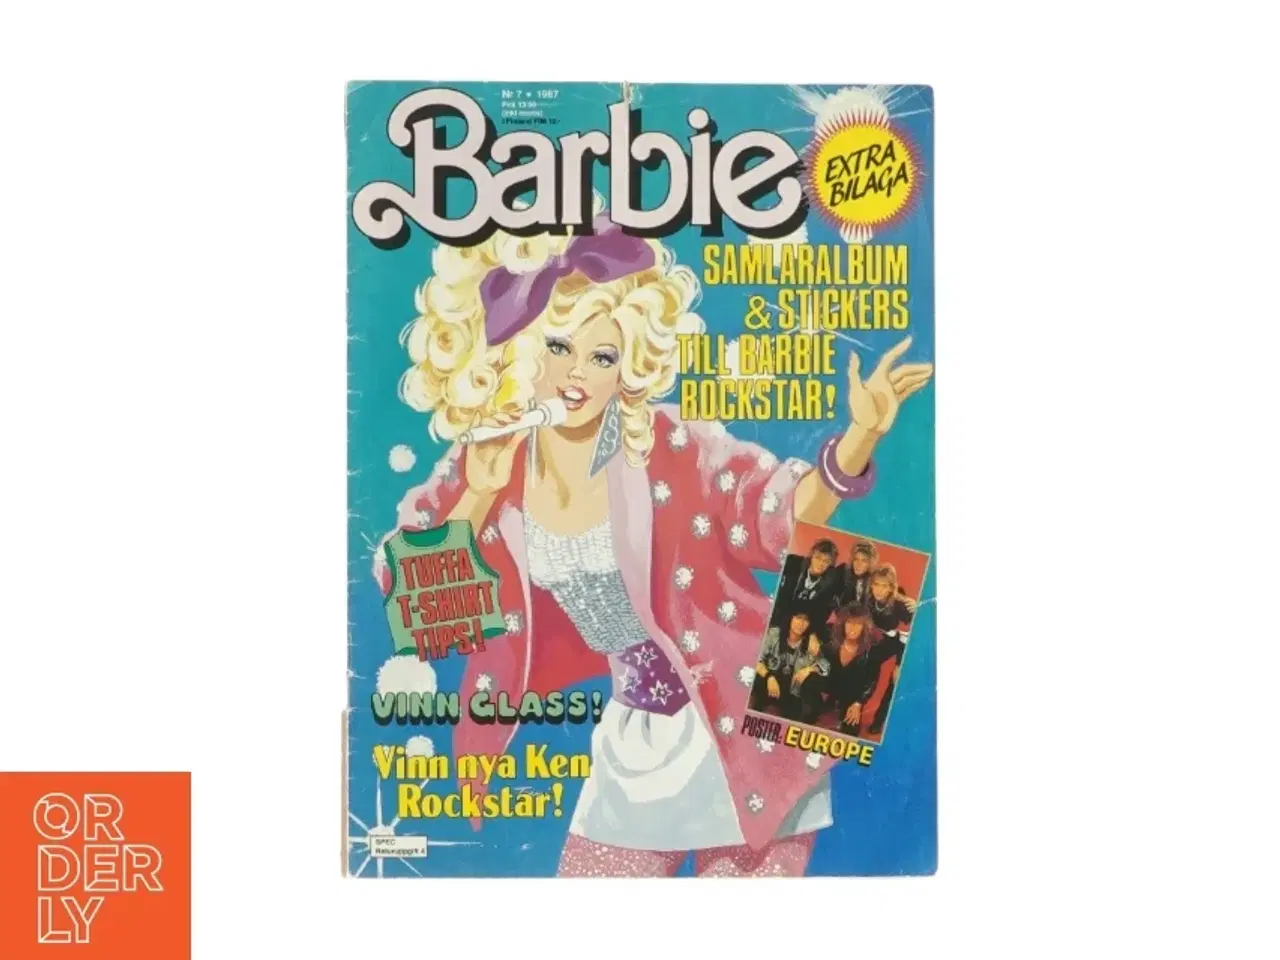 Billede 1 - Barbie blad (svensk/norsk)